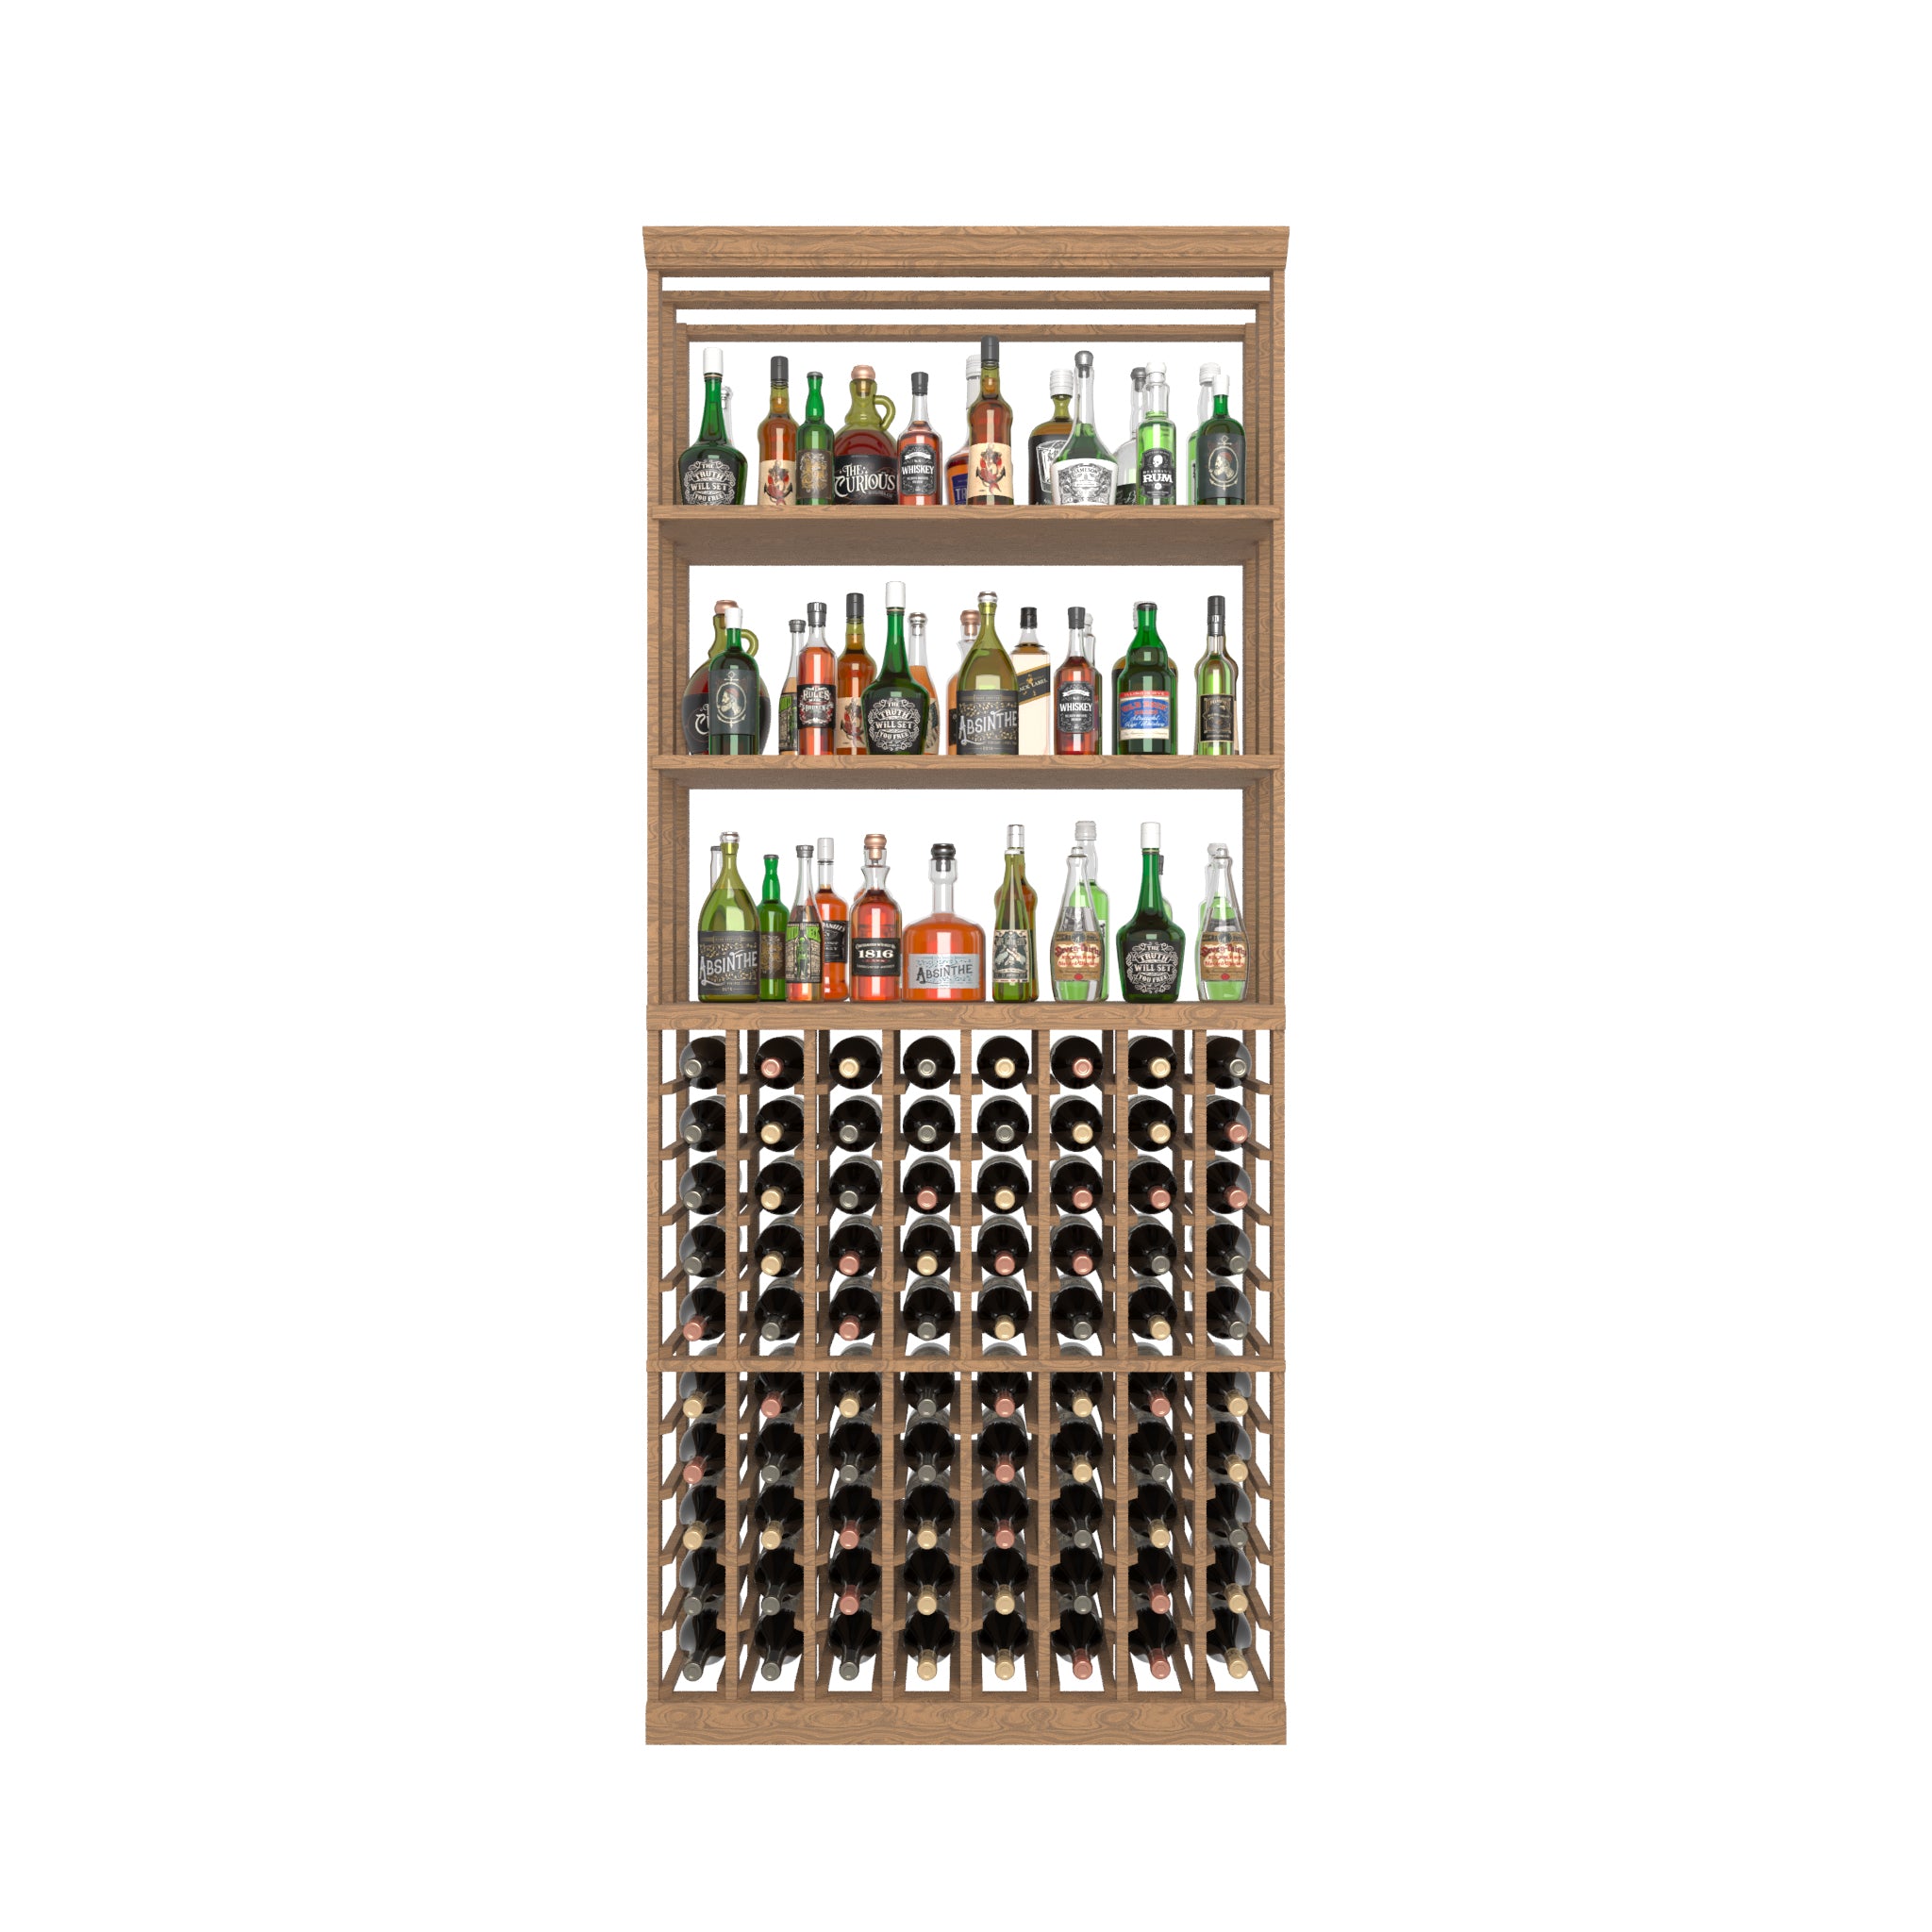 08 Column Rack with Liquor Display Shelves - 750ml Bottles